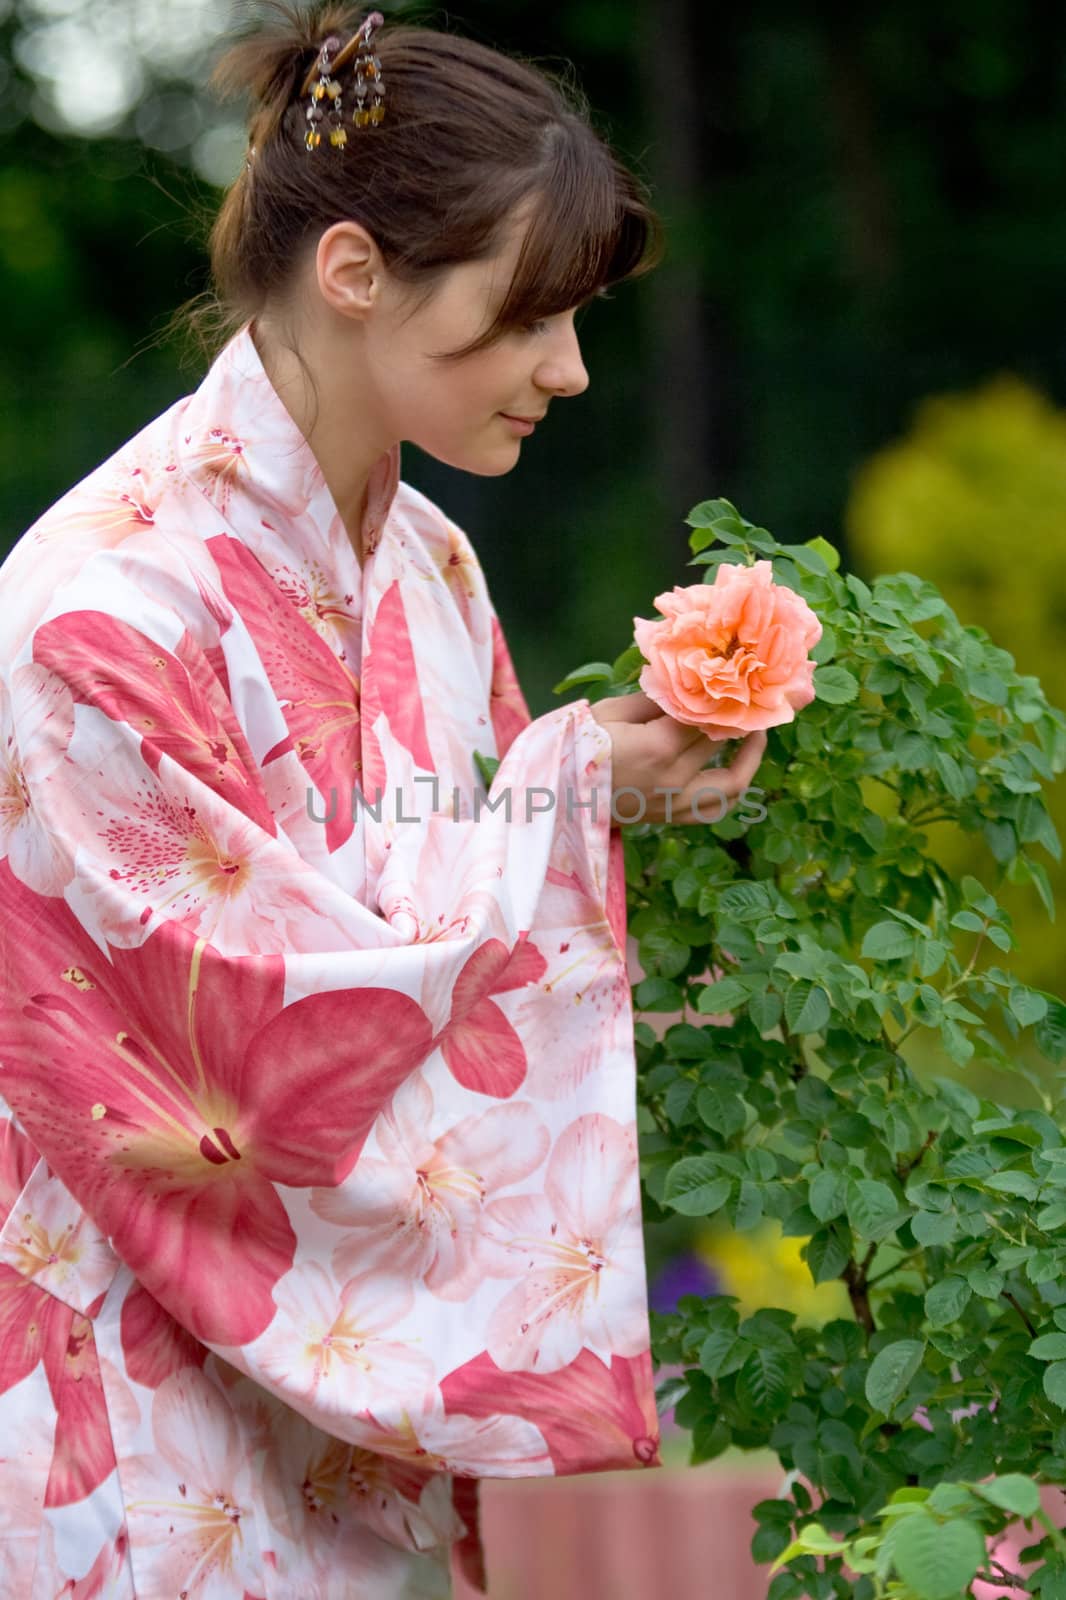 Girl in a flower yukata by foaloce